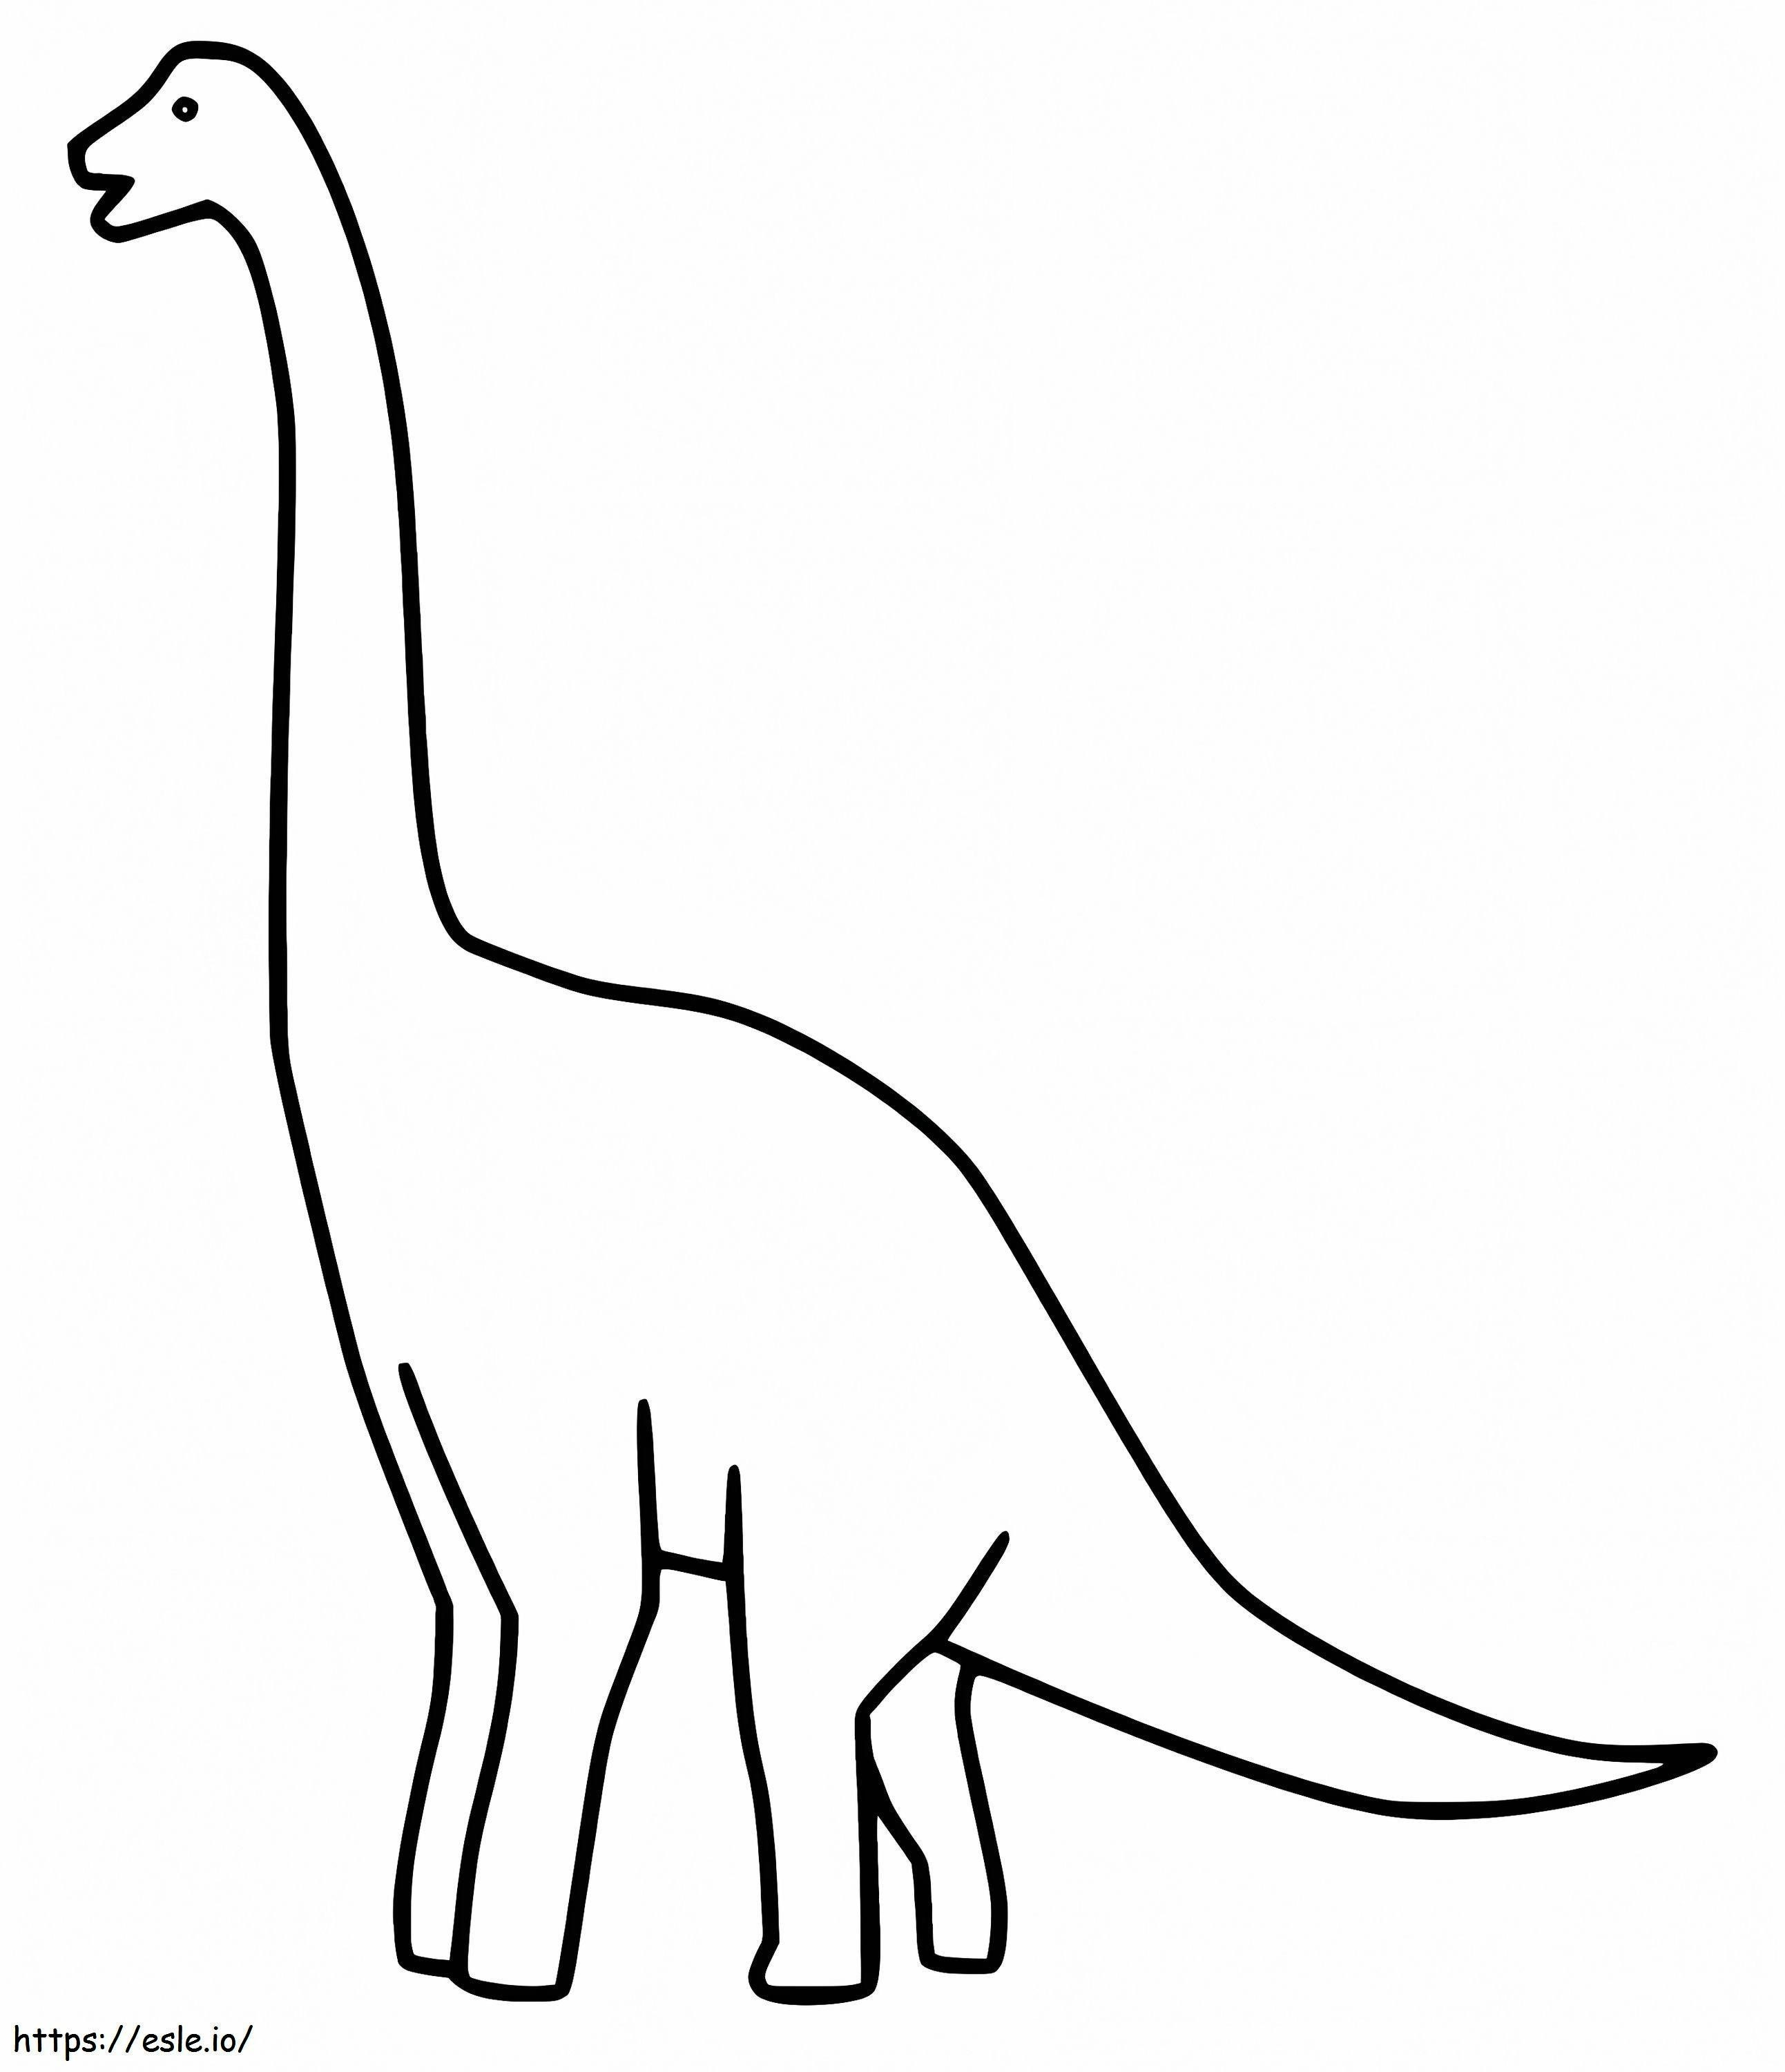 Brachiosauro semplice da colorare